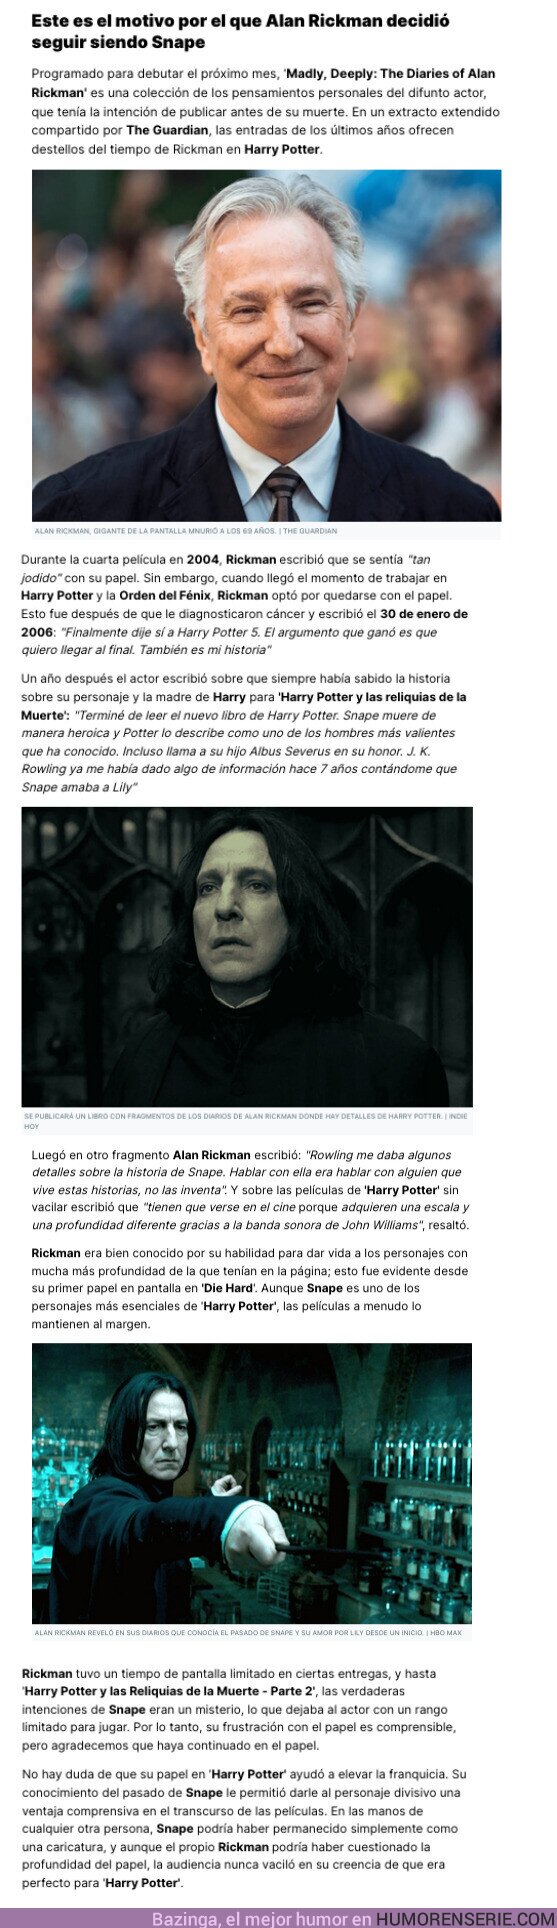 126599 - GALERÍA: Este es el motivo por el que Alan Rickman decidió seguir siendo Snape